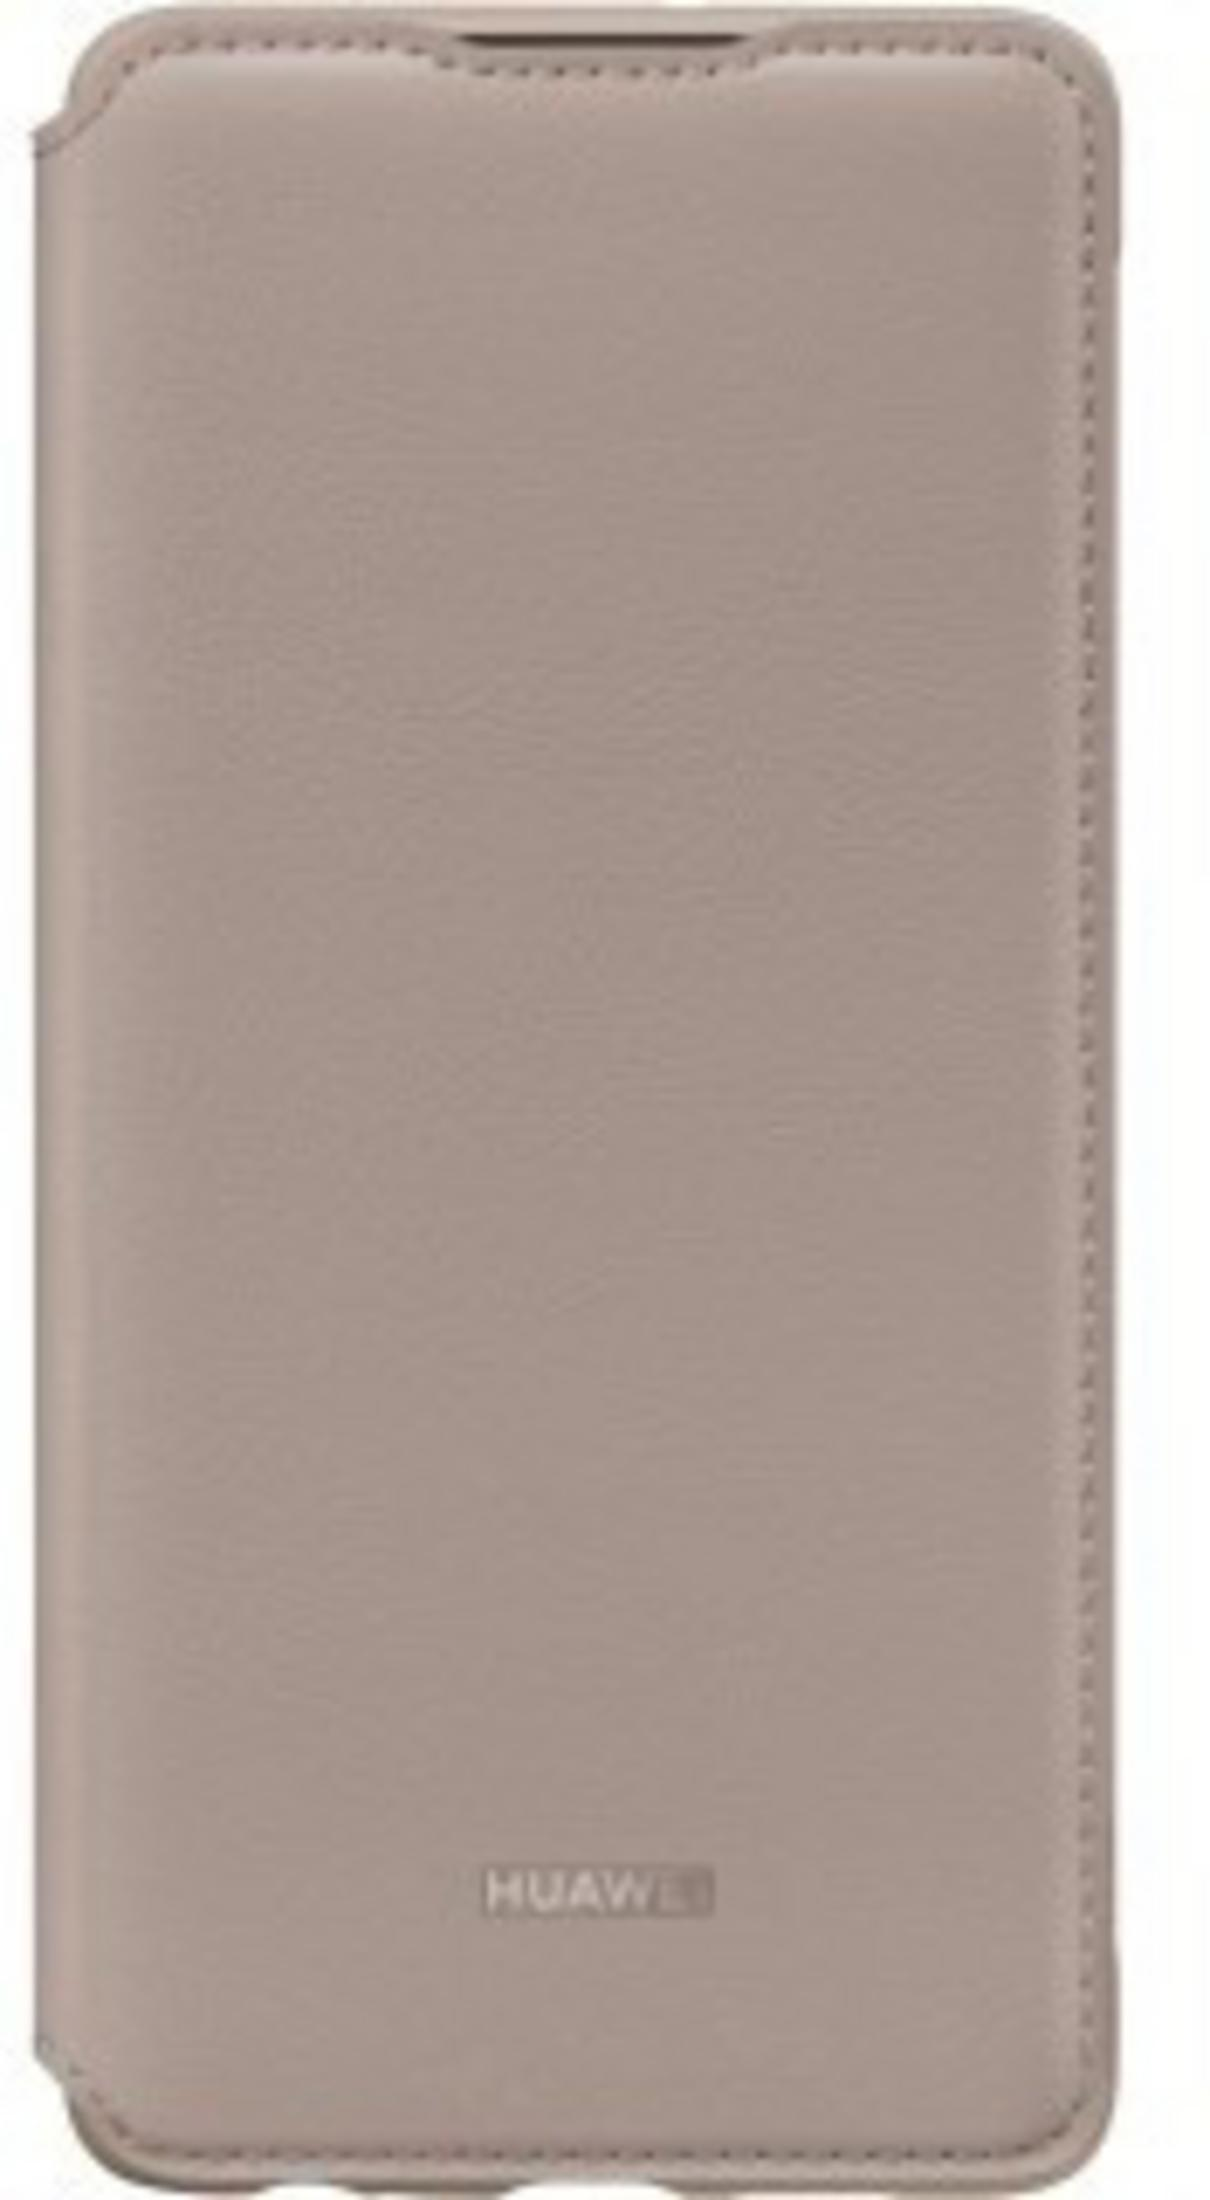 HUAWEI Original Flip Smart View Case, P30, Orange Bookcover, Huawei